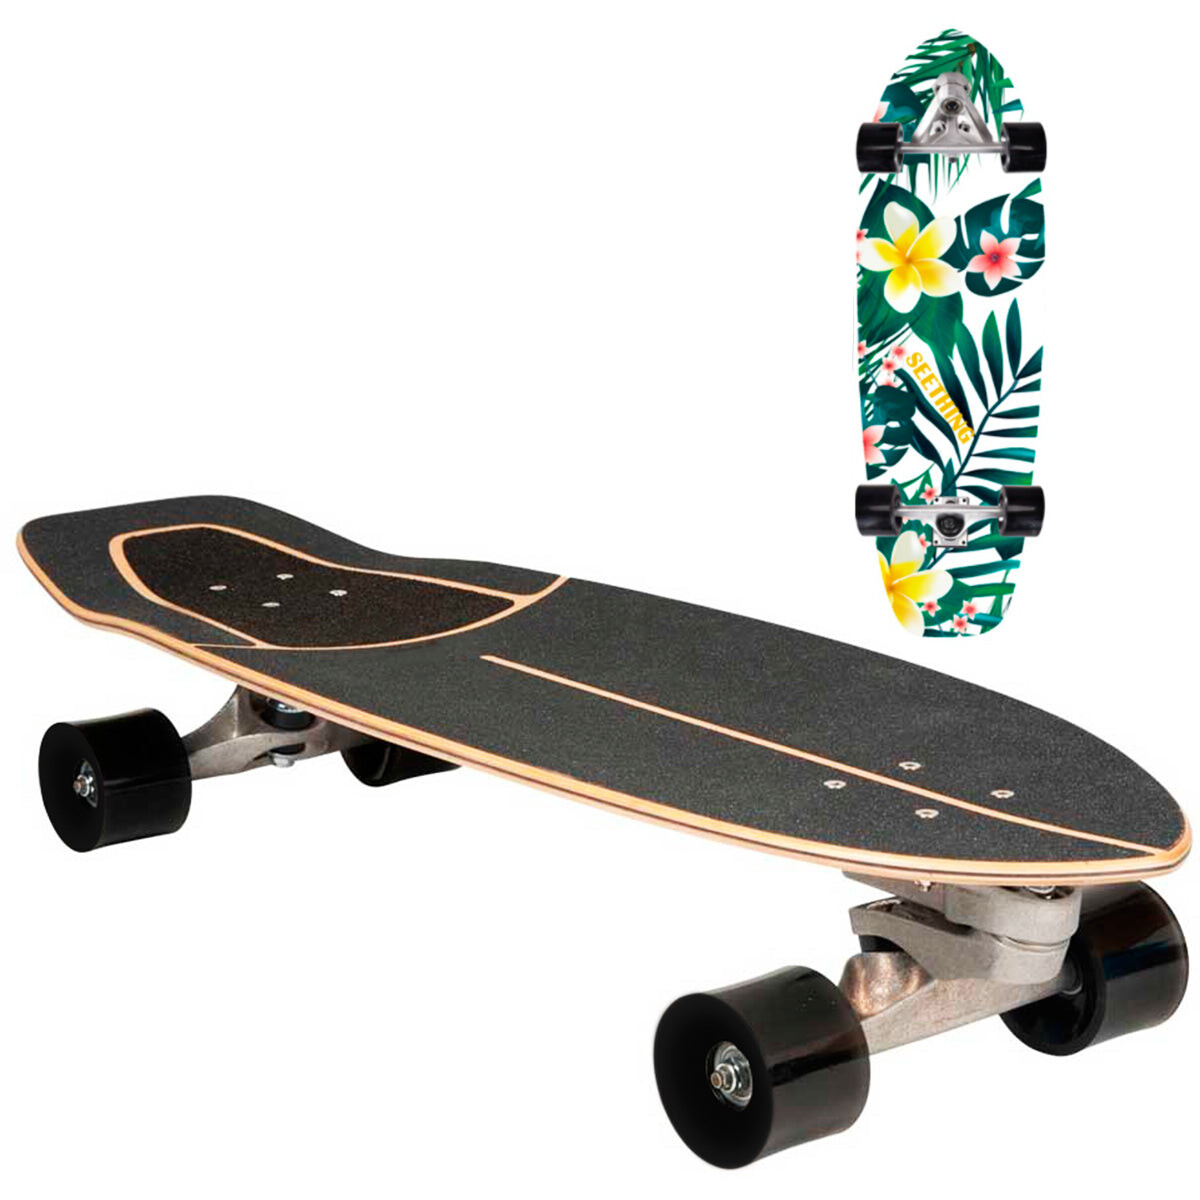 Skate Patineta Longboard Carver Surfskate Con Lija 